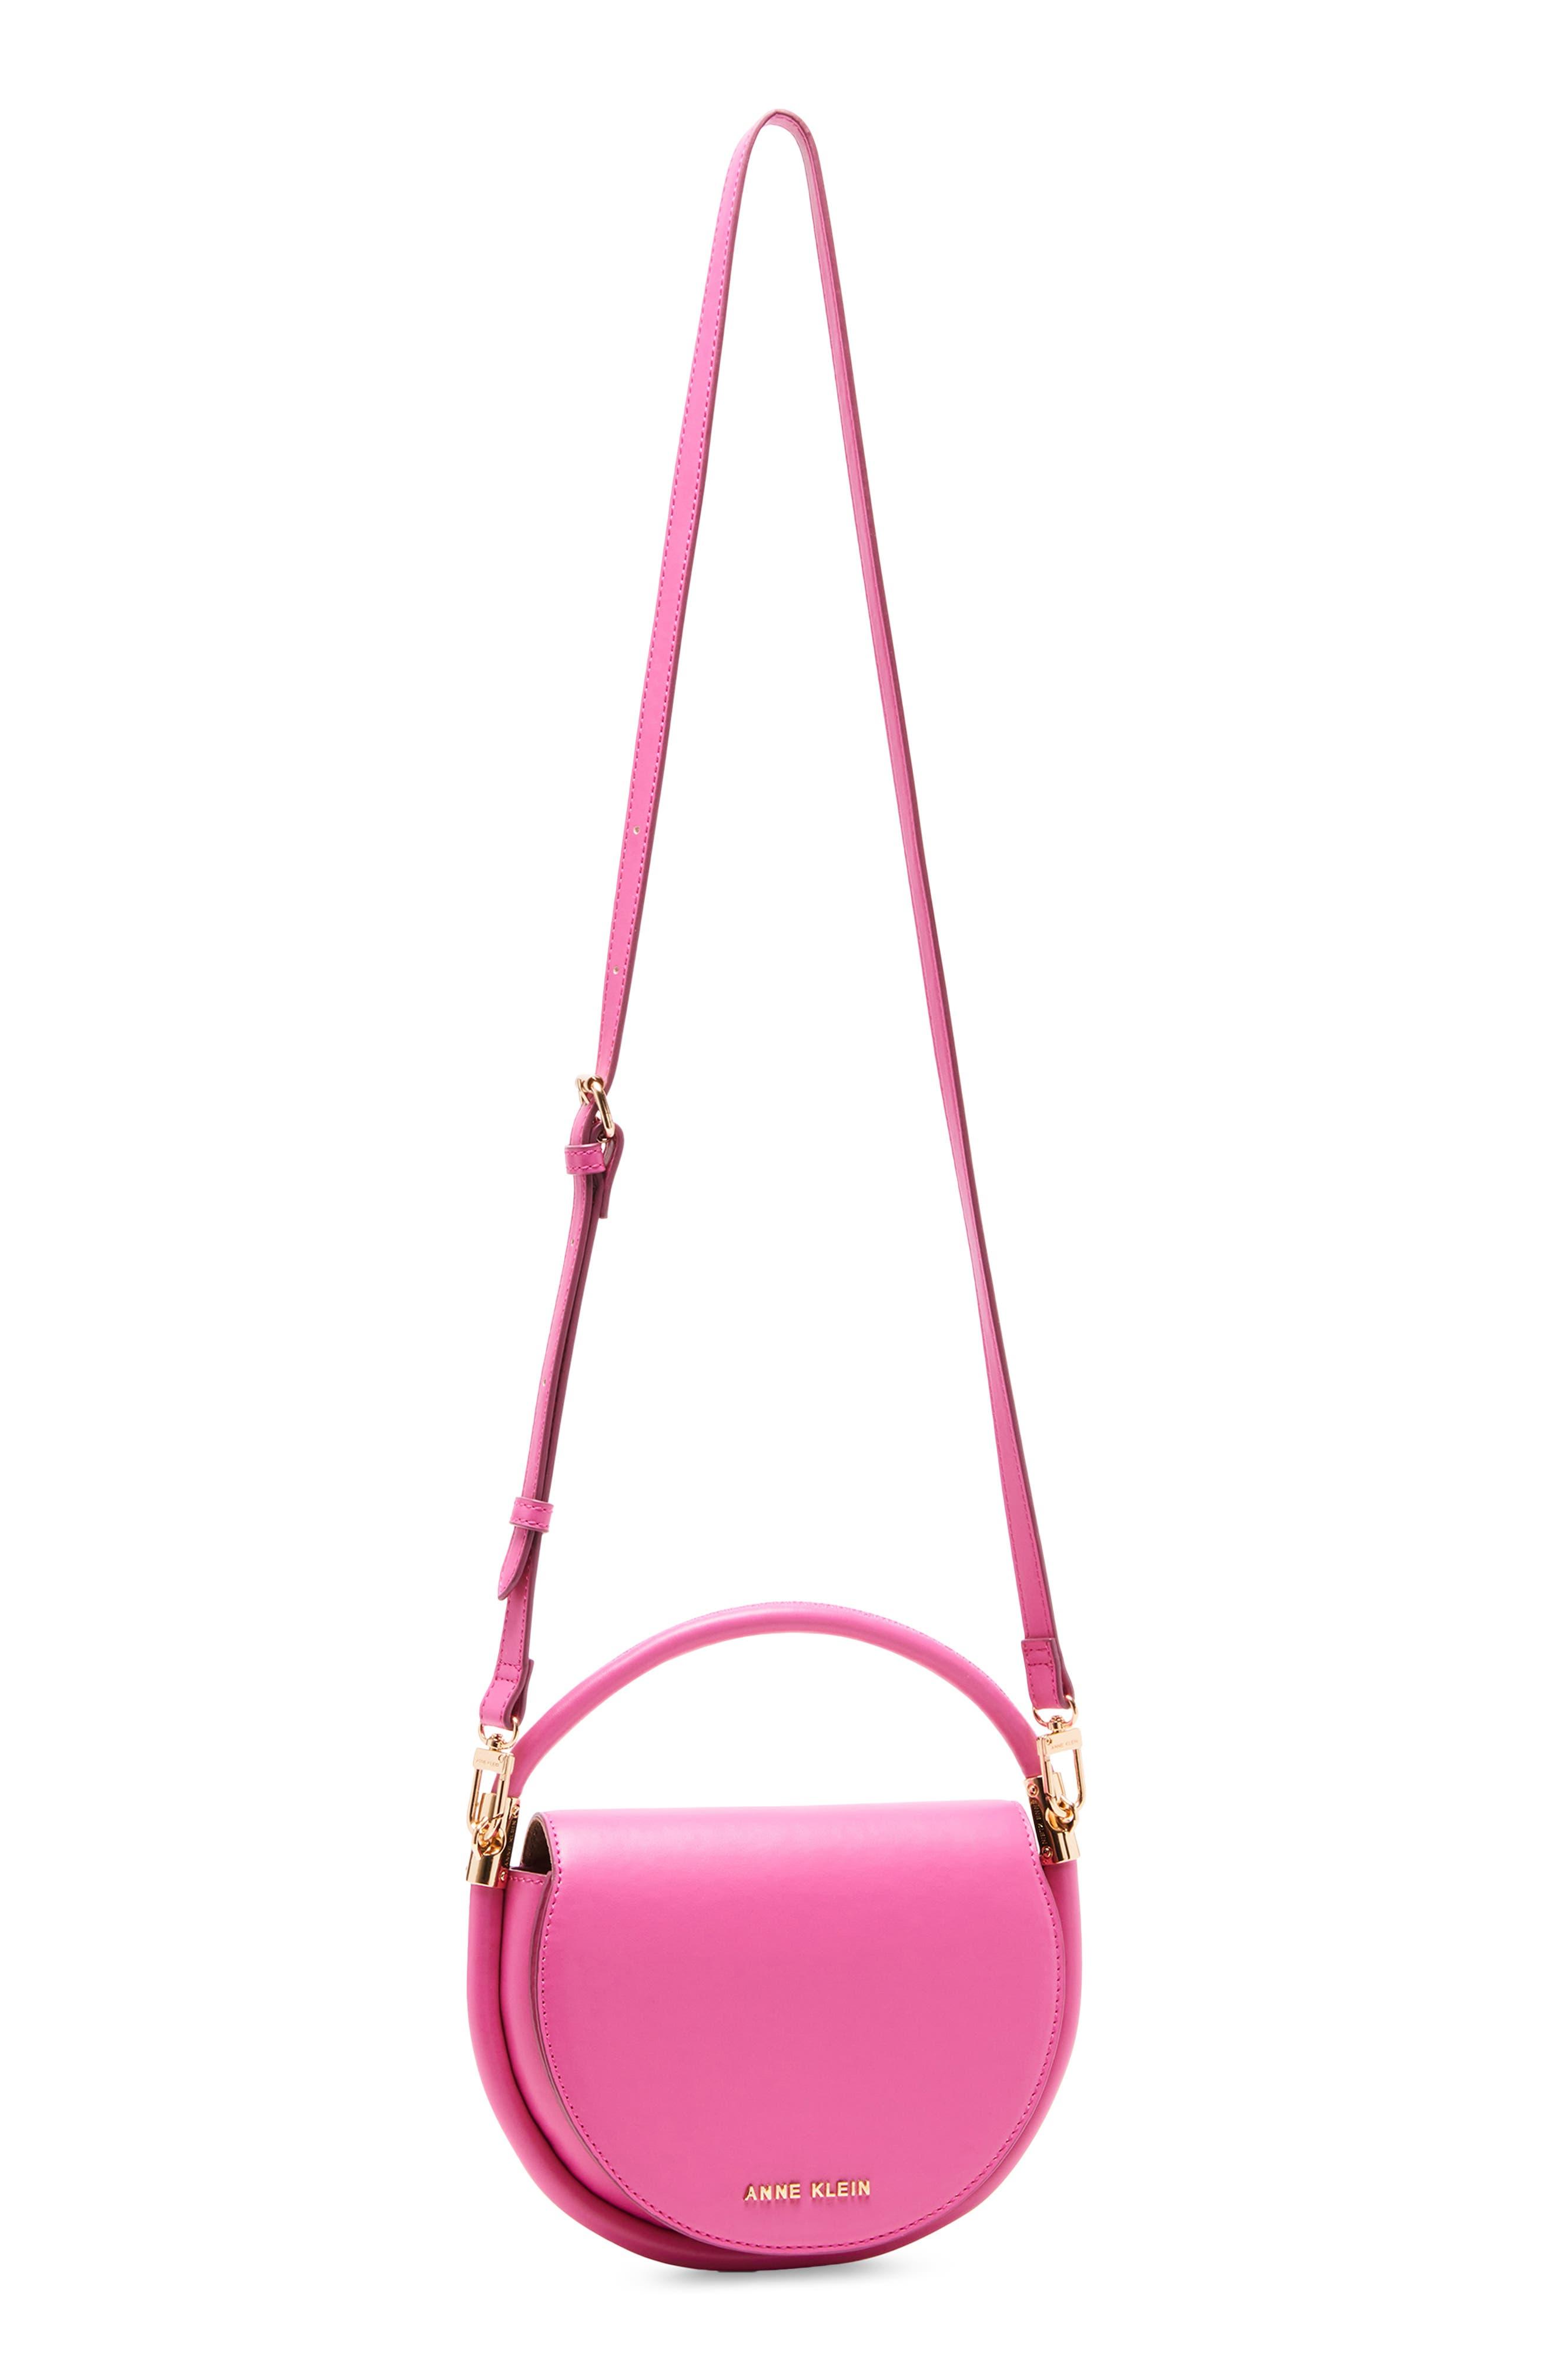 Anne Klein Handbags | ShopStyle